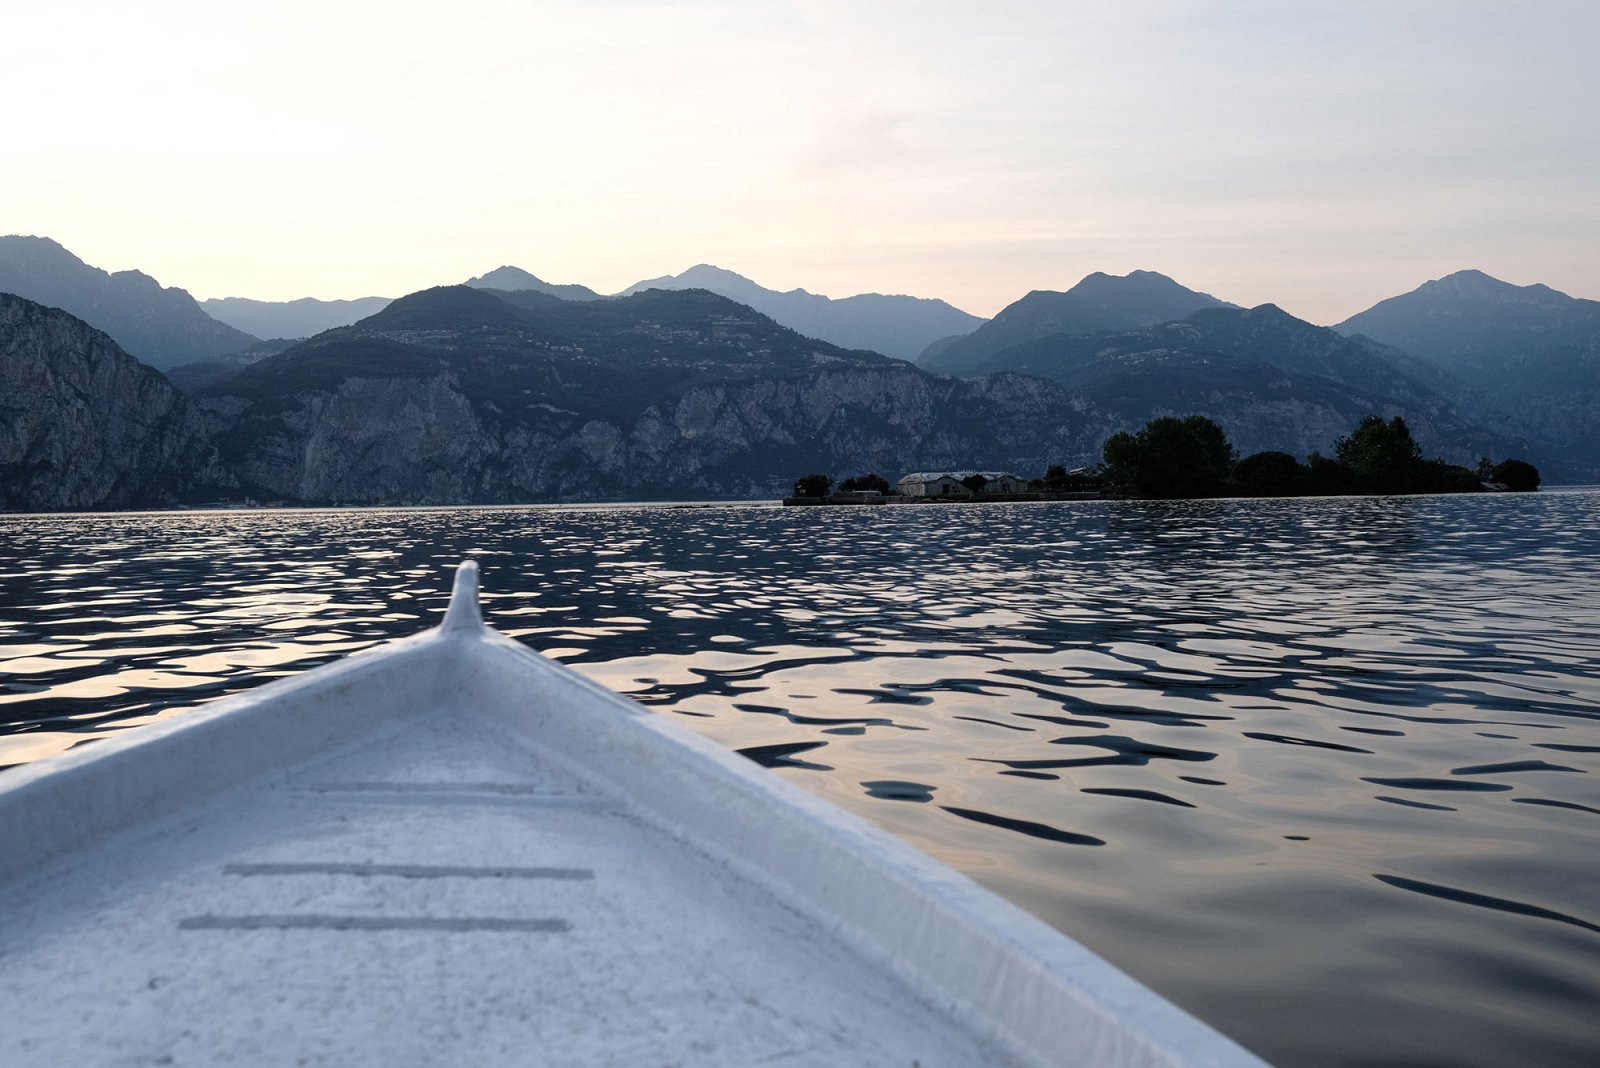 Gite in barca serali per ammirare il tramonto sul lago di Garda durante le vacanze a Brenzone